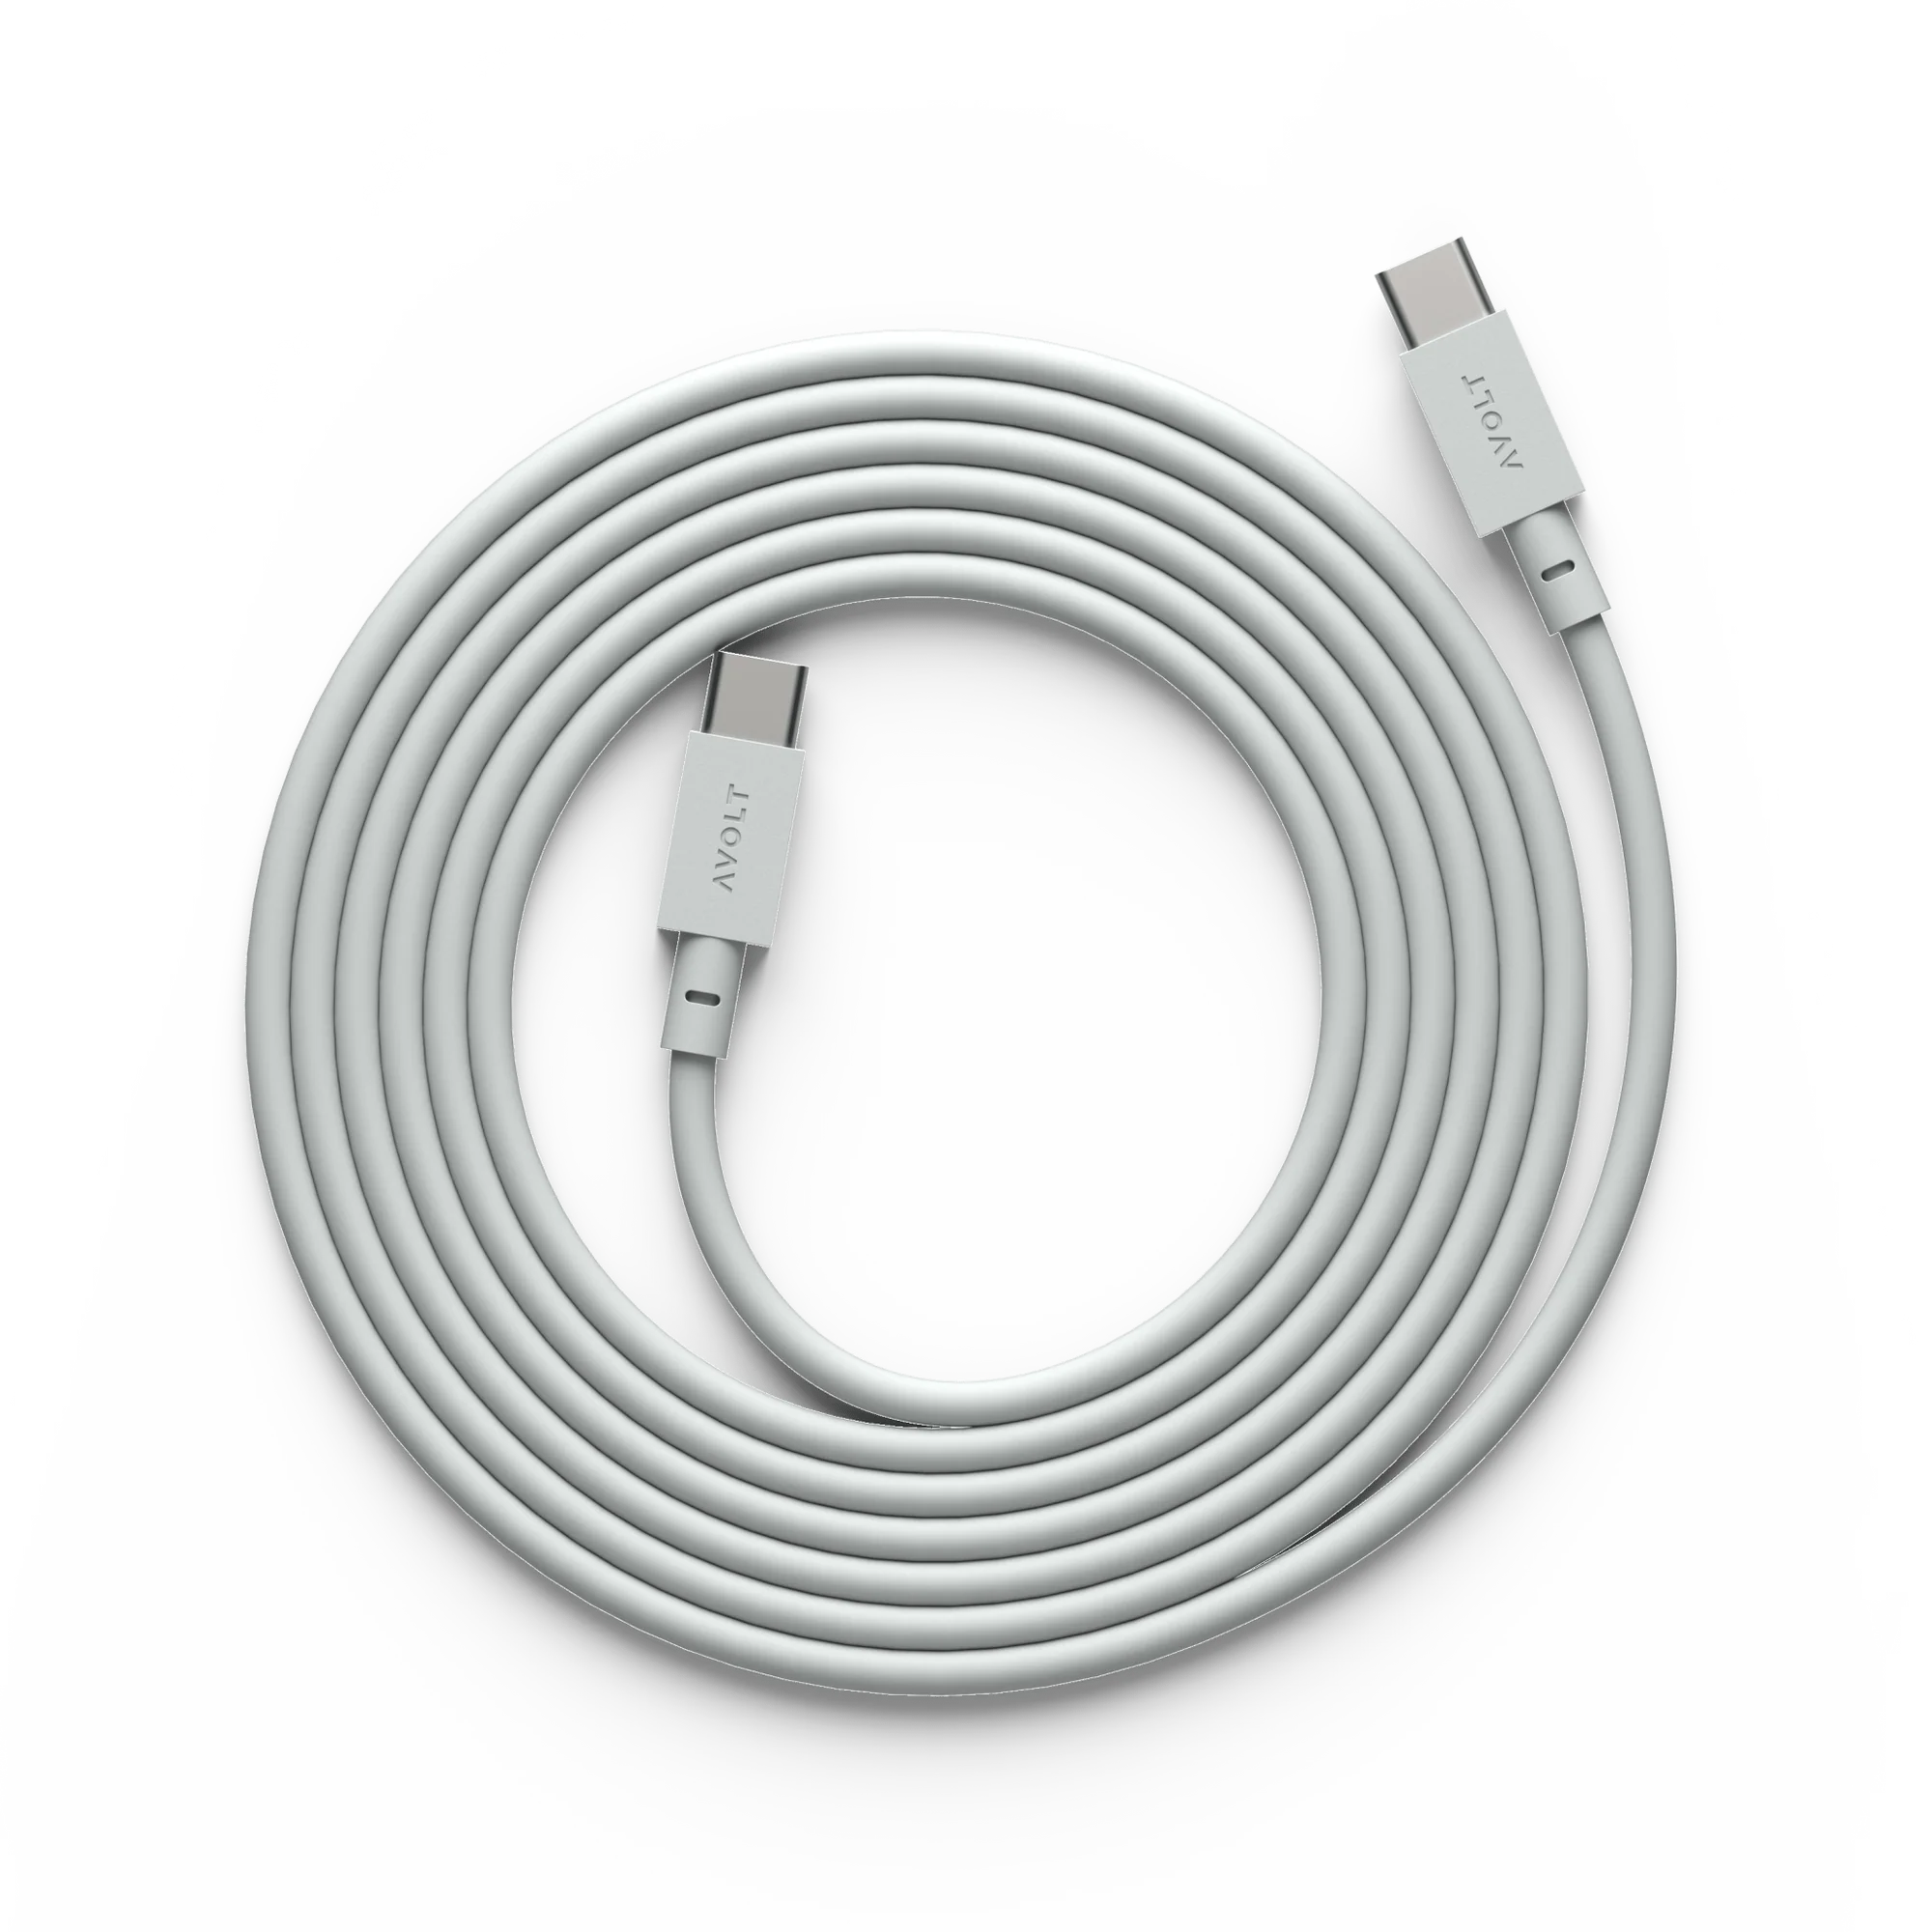 Cablu de încărcare Cable 1 USB-A to Apple lightning, Culoare Grey - Avolt